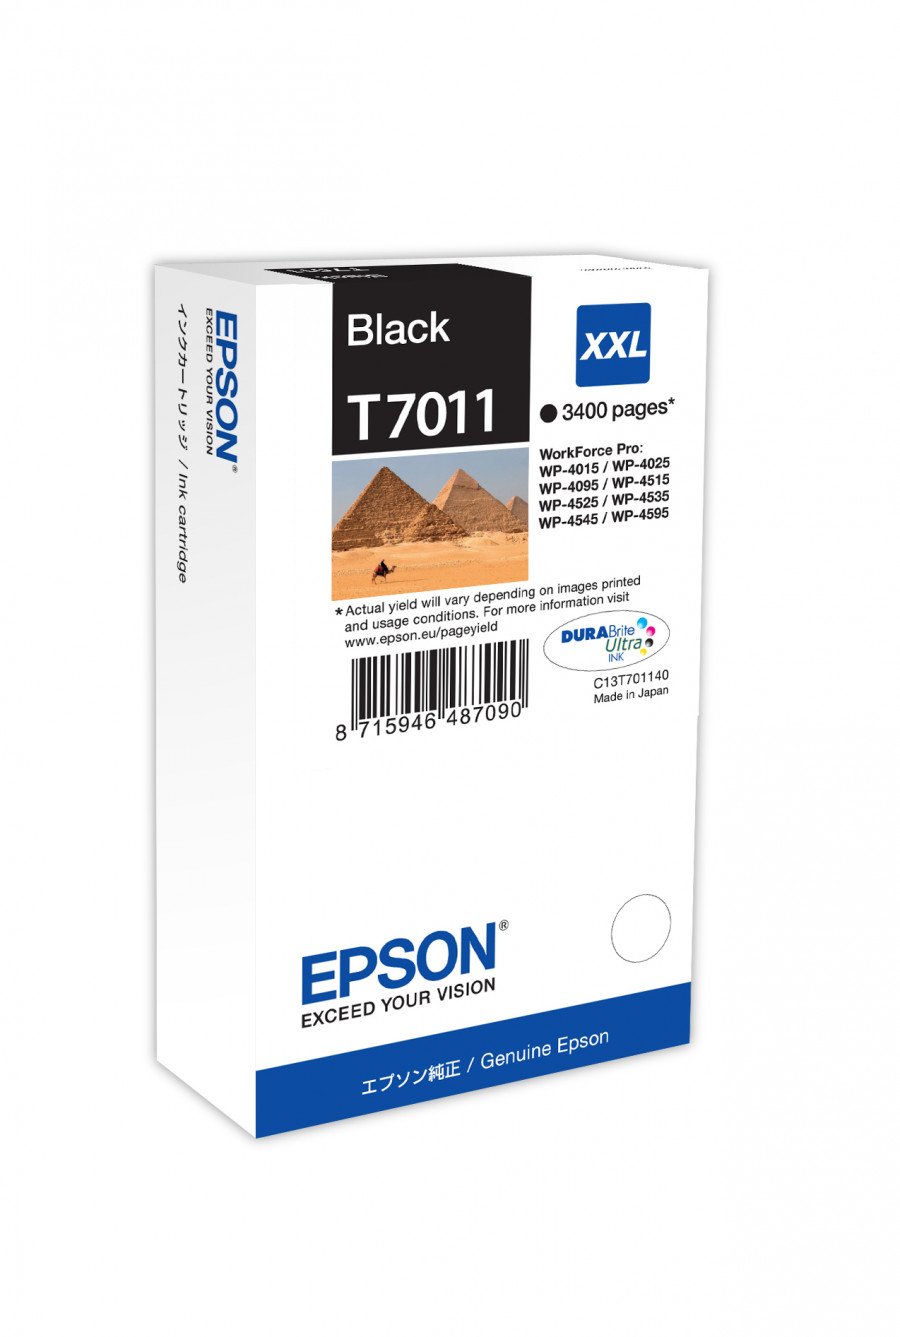 Image of Epson cartuccia t7011 piramidi elevata xxl nero PIRAMIDI Materiale di consumo Informatica